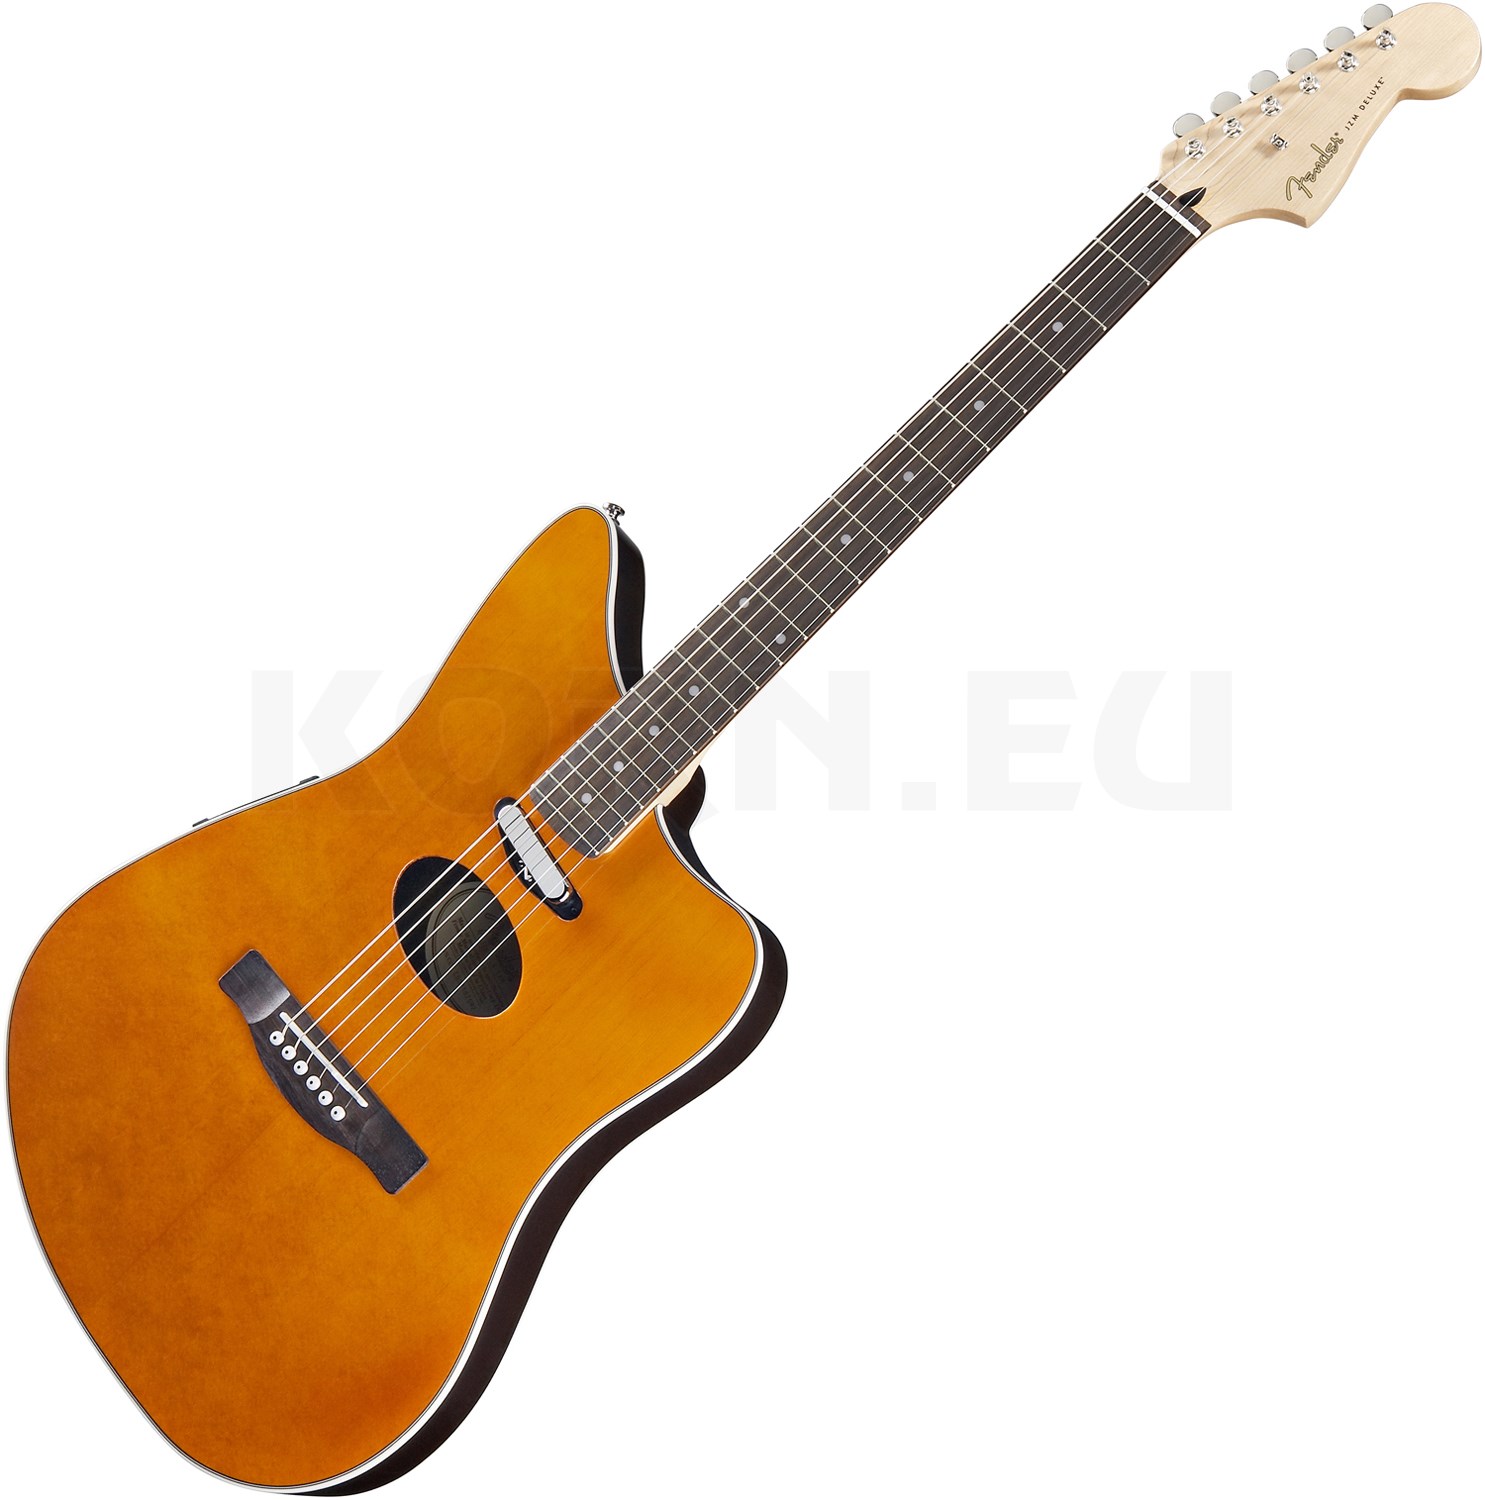 Fender JZM Coustic Deluxe エレキアコースティックギター